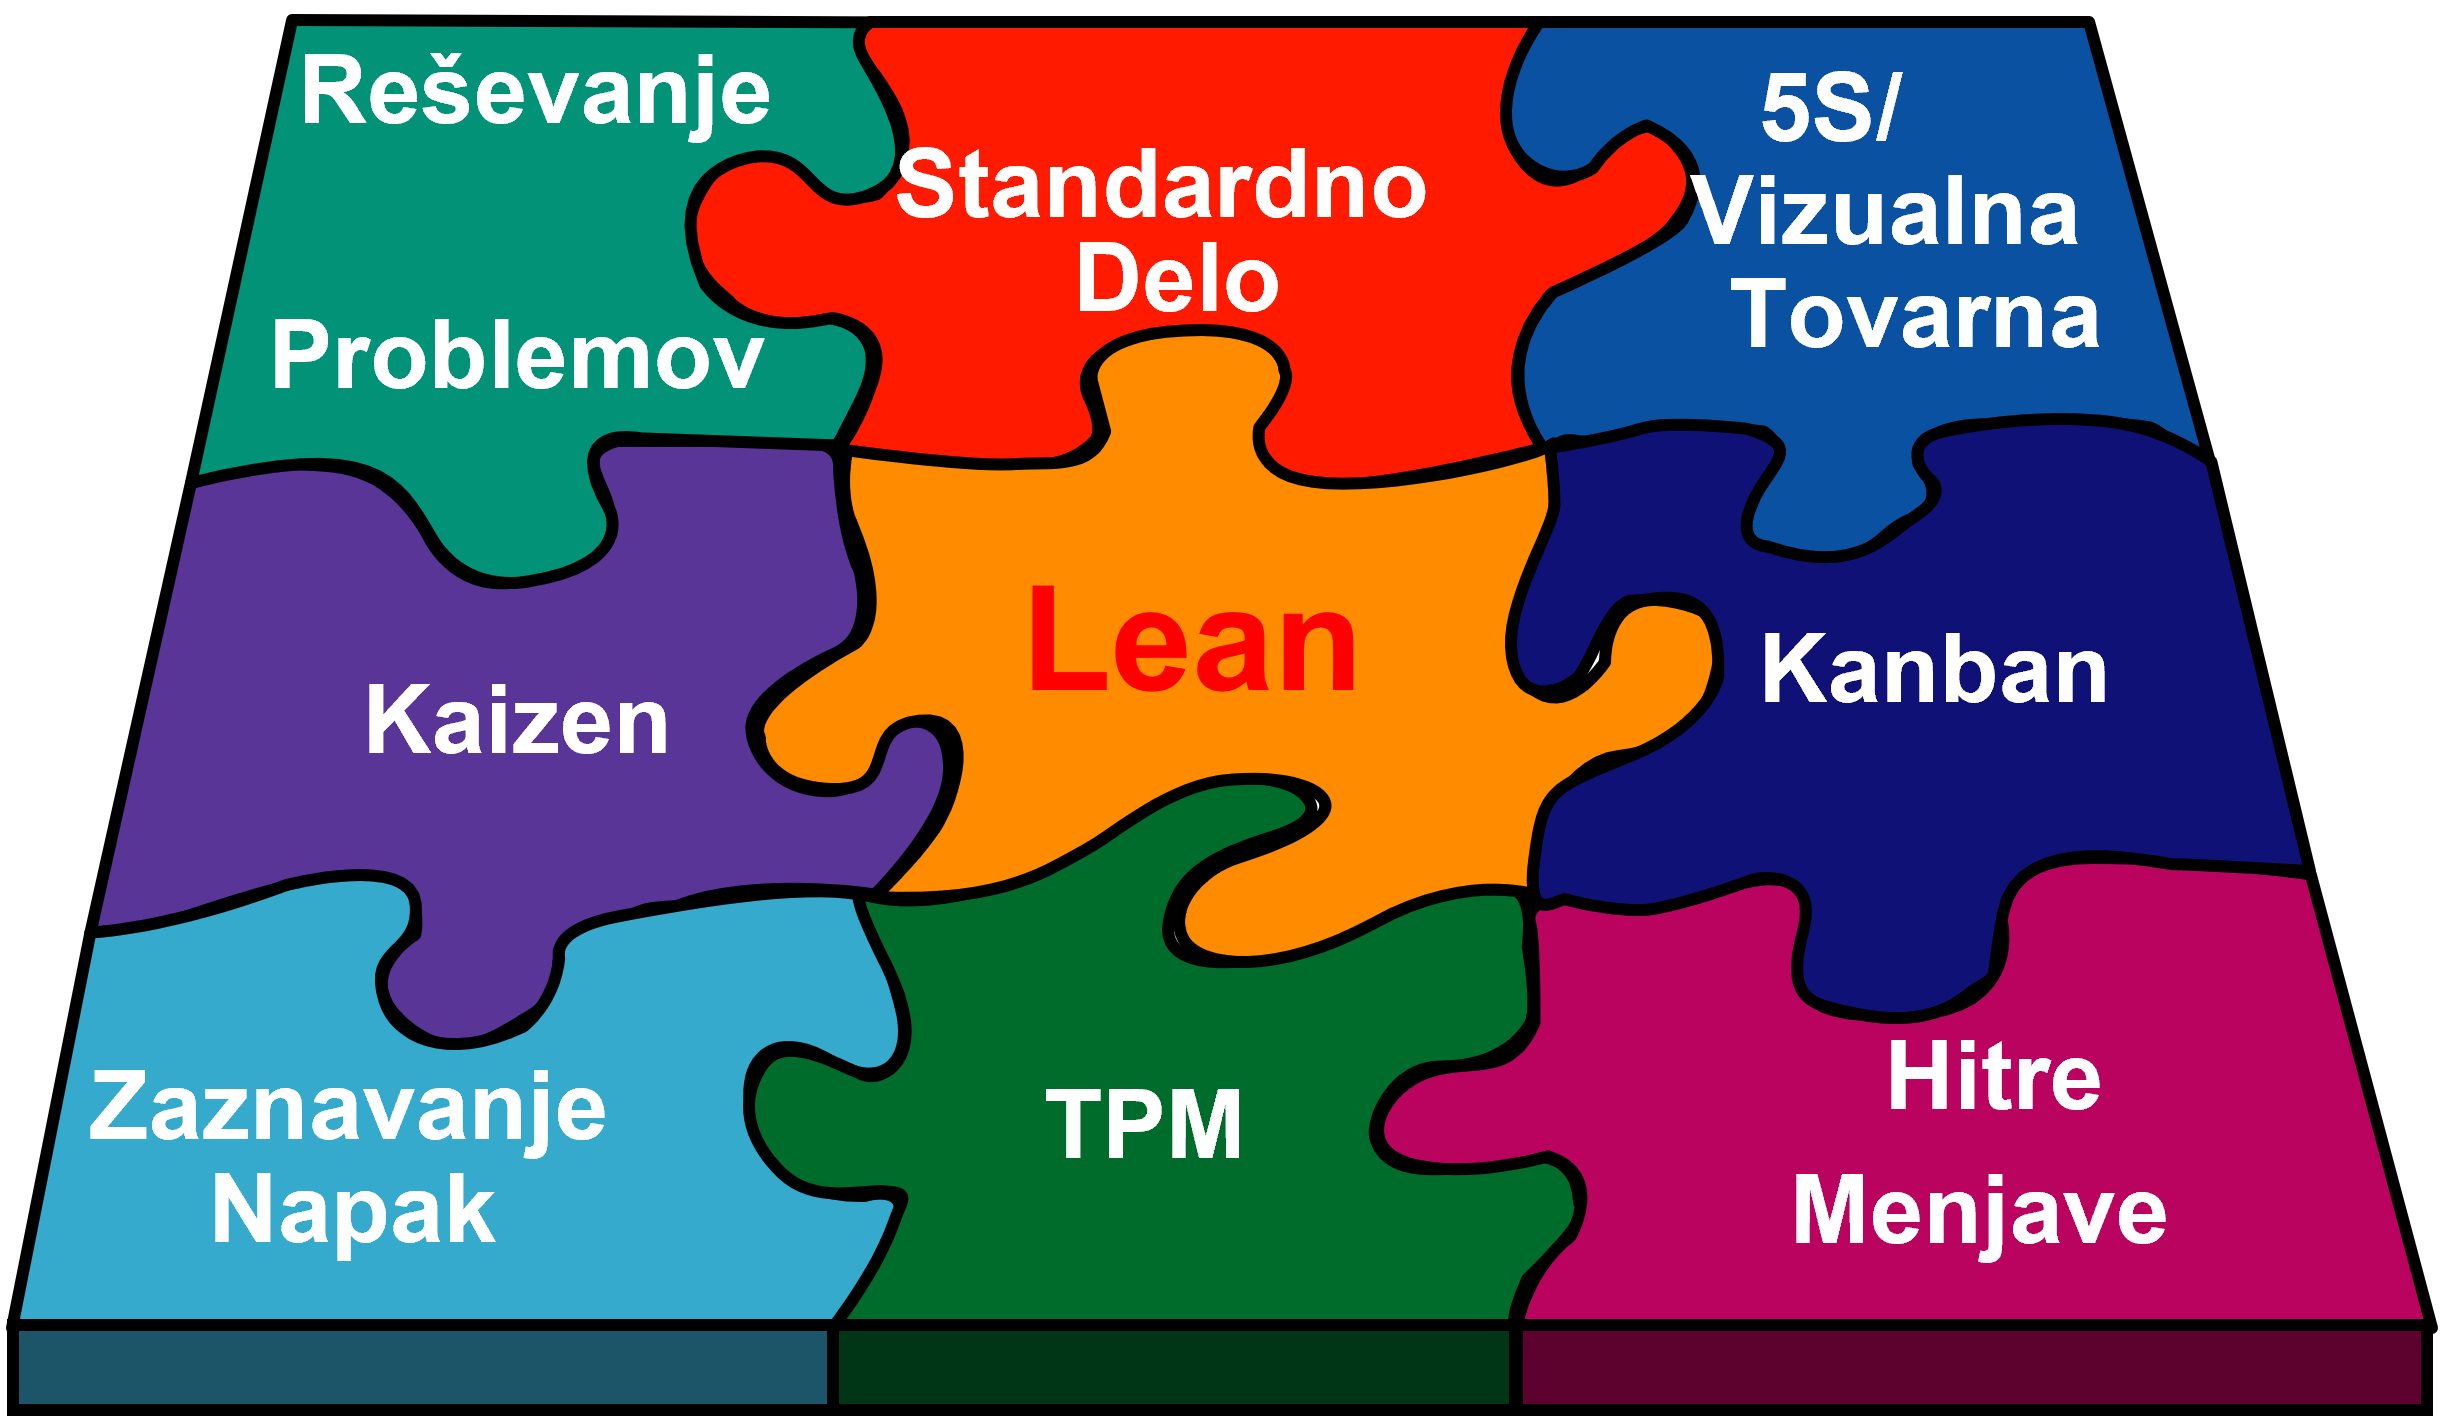 Lean methods